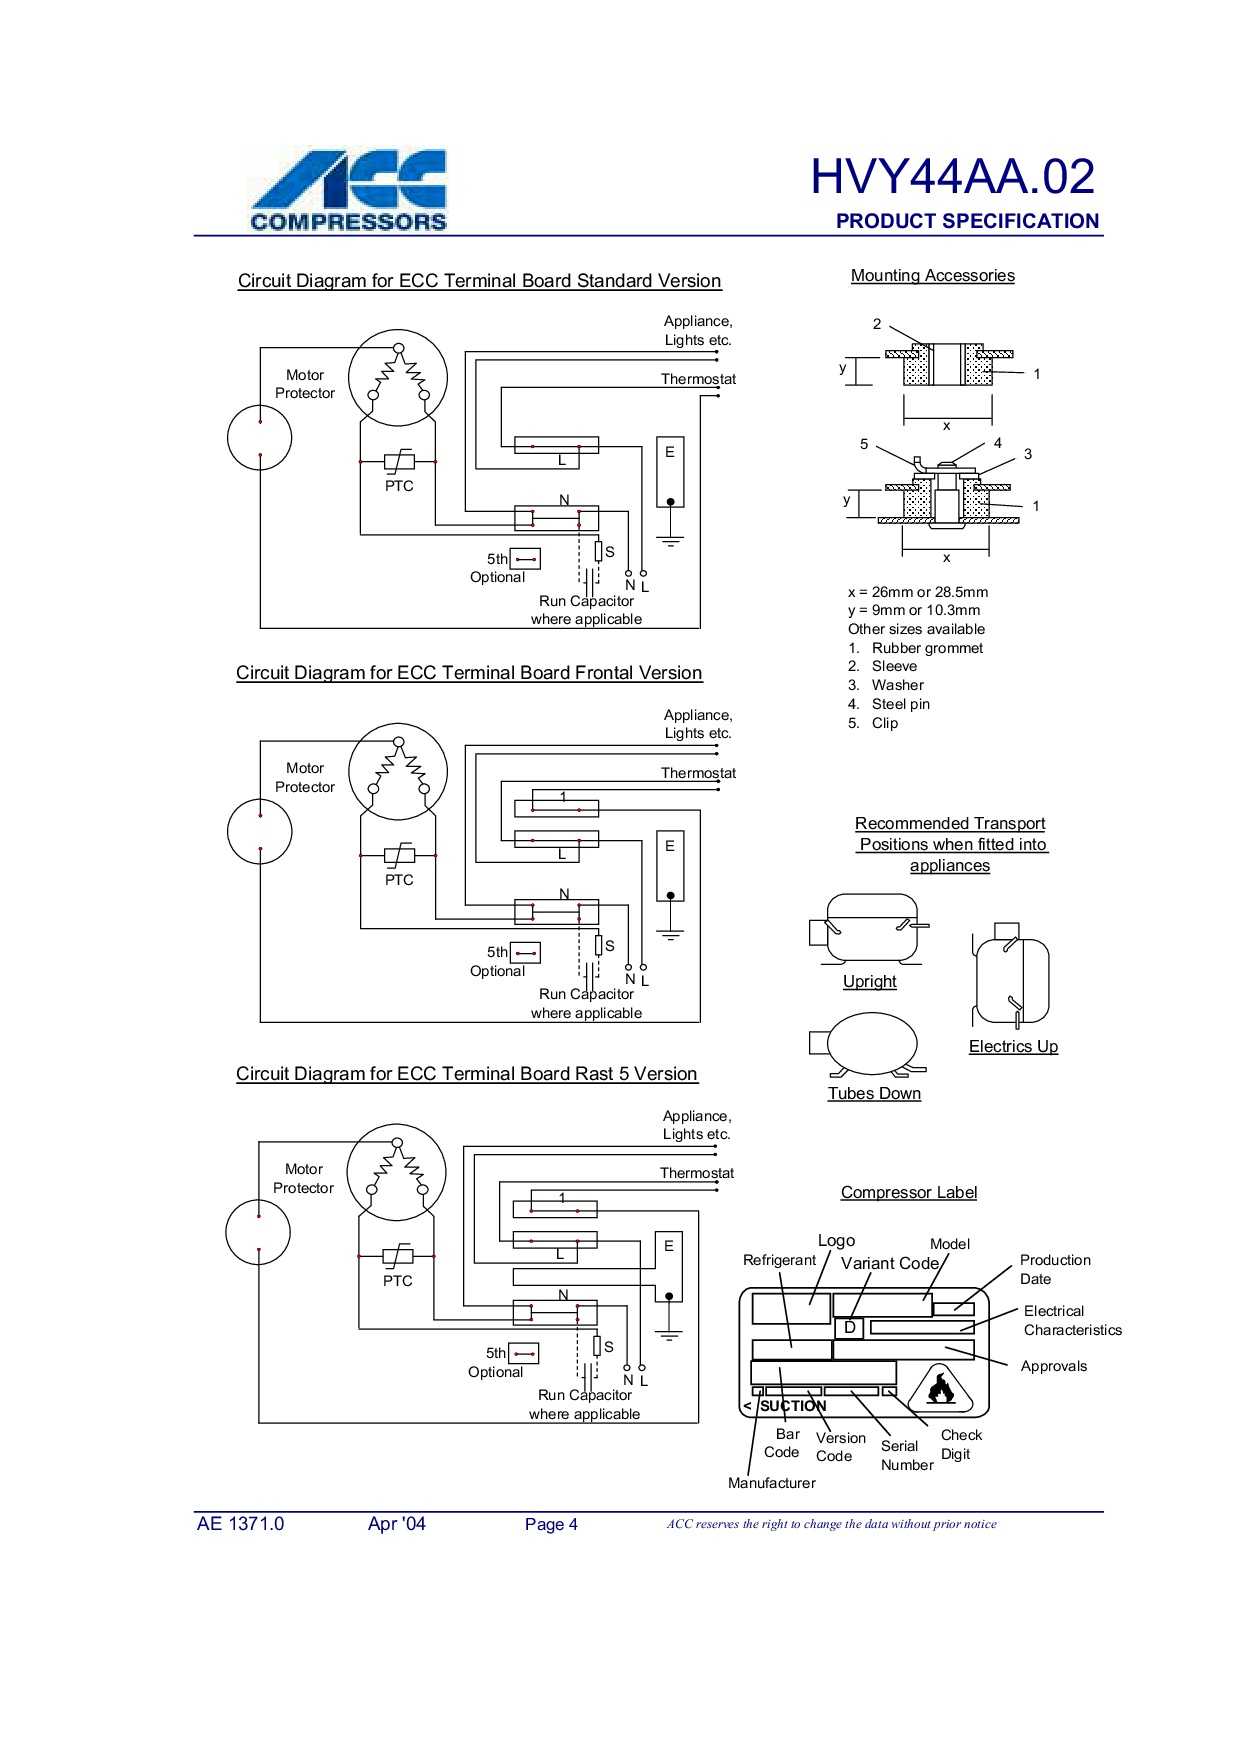 Разборка компрессора холодильника - пошаговая инструкция с фото